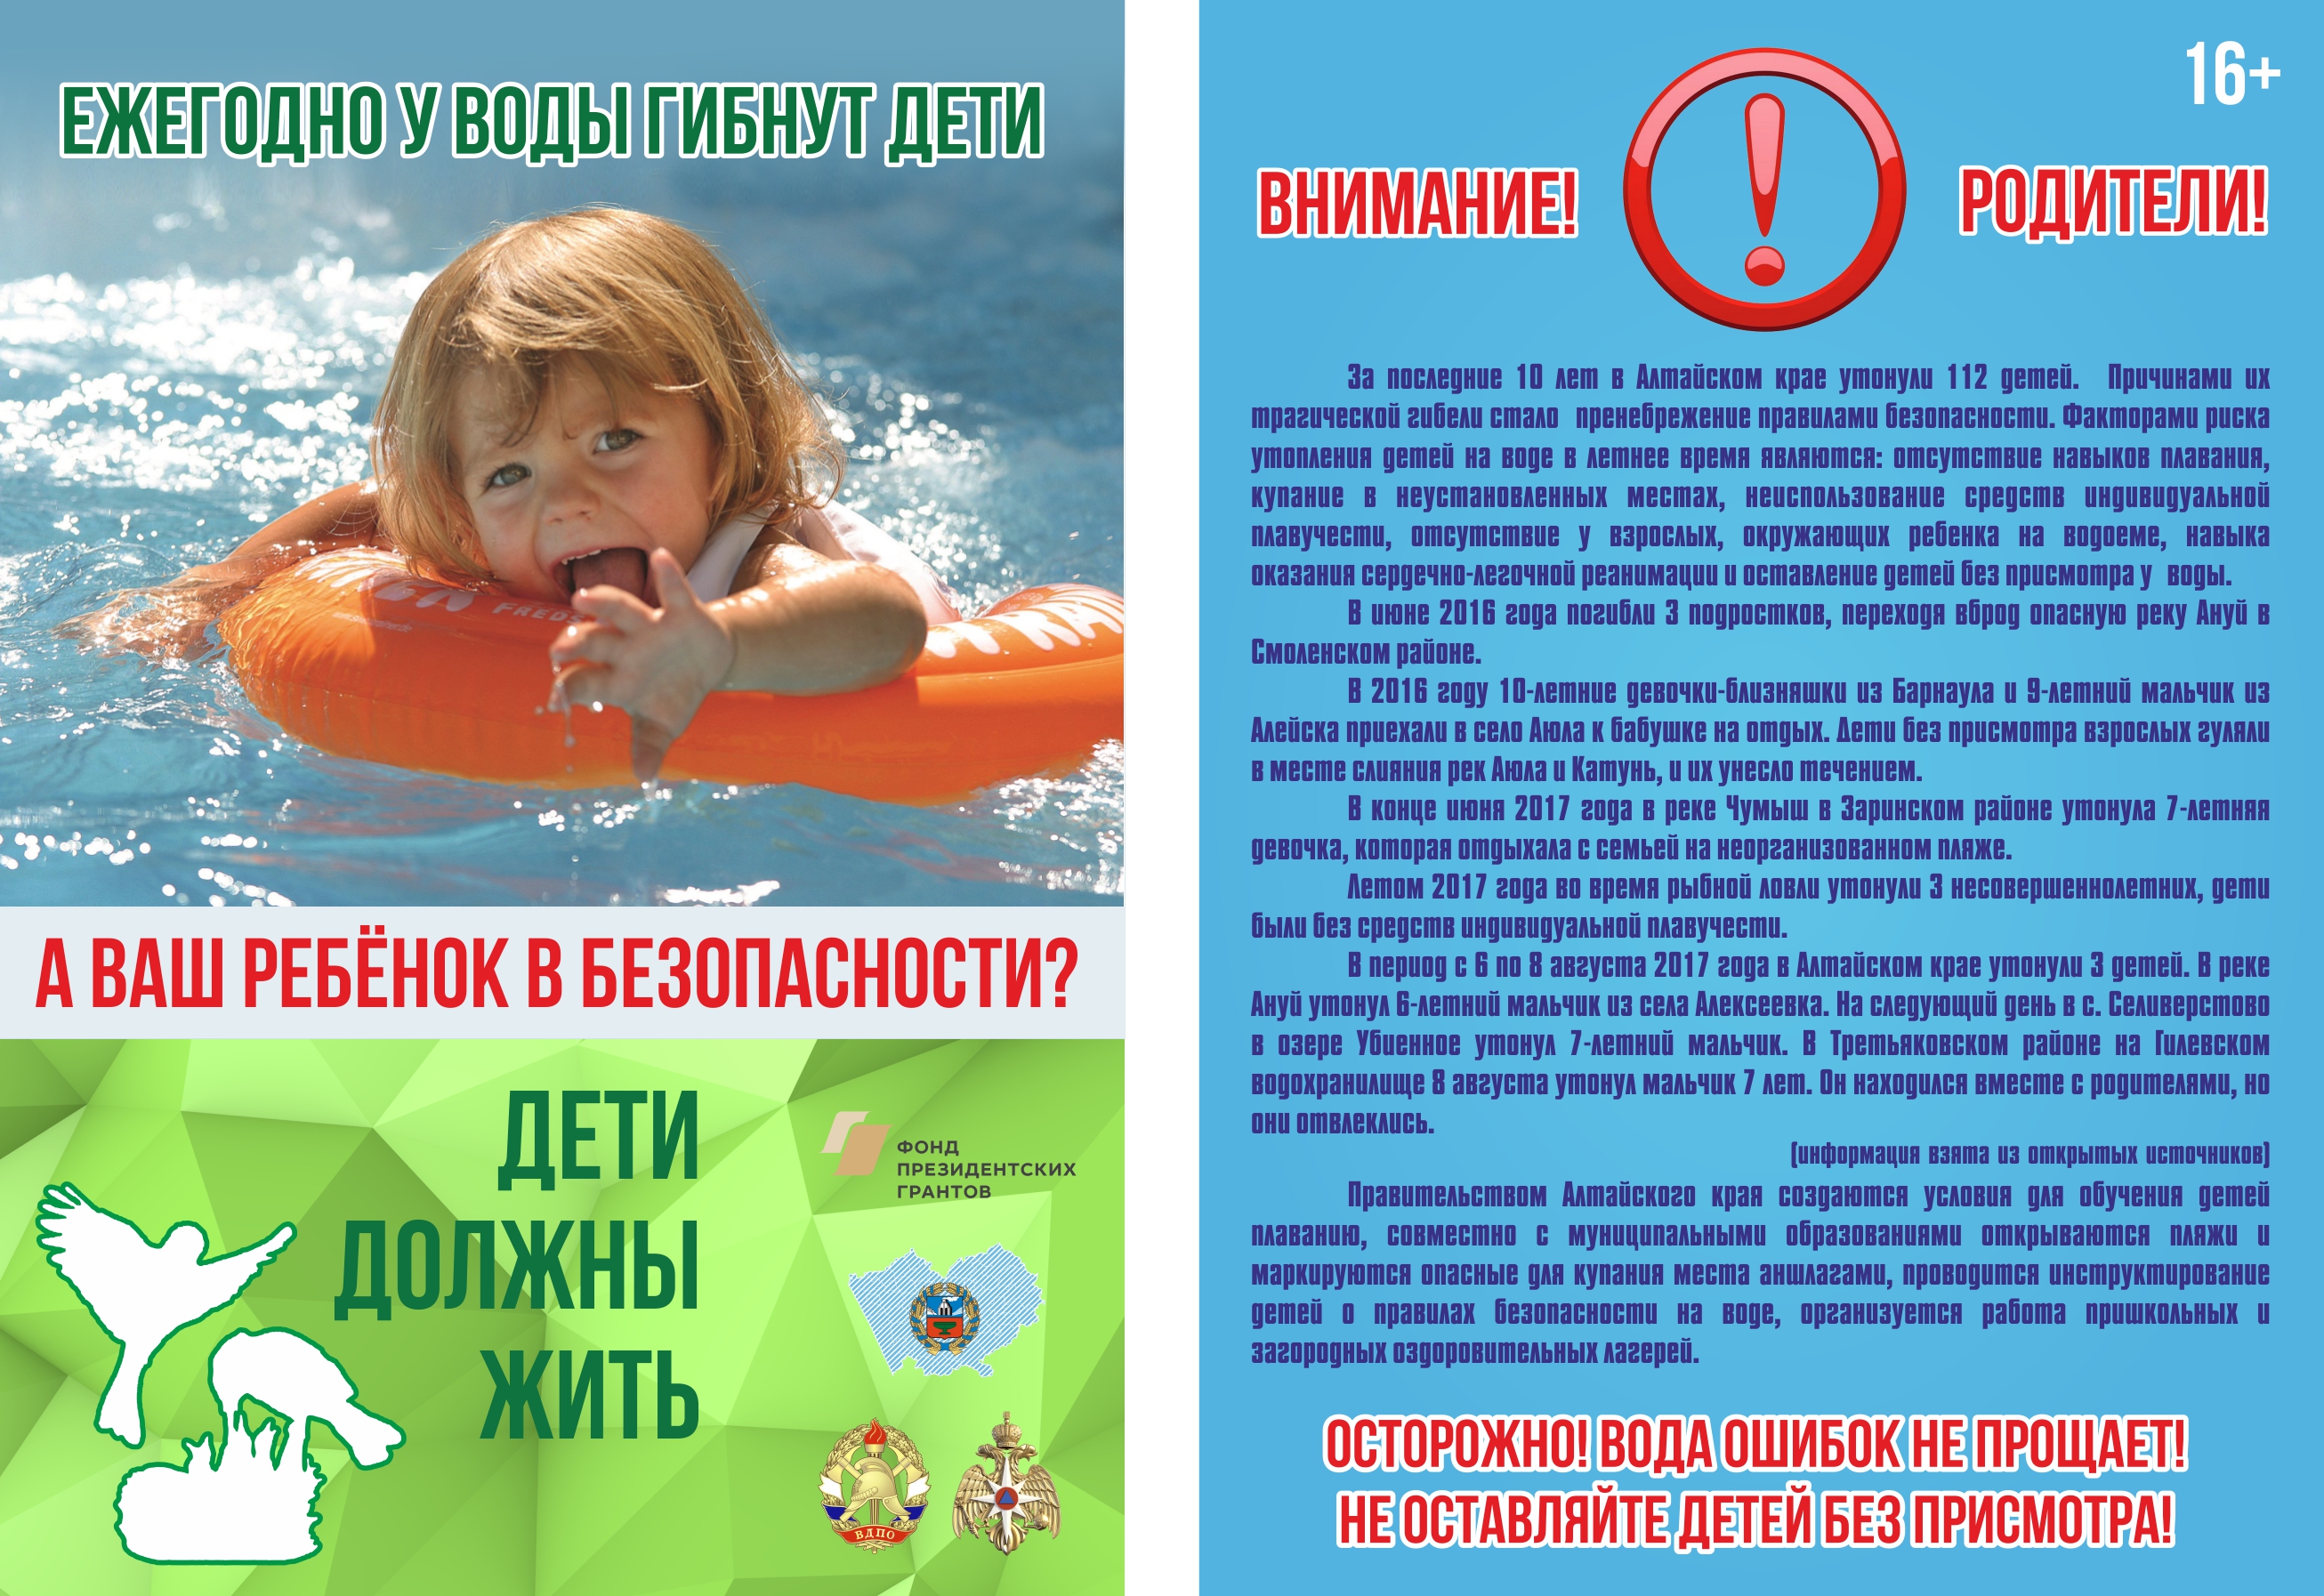 Информация взята из открытых источников. Безопасность на водоемах летом для детей. Безопасность на вордоемахдля детей. Безопасность на воде для детей. Безопасность детей на водоемах в летний период.